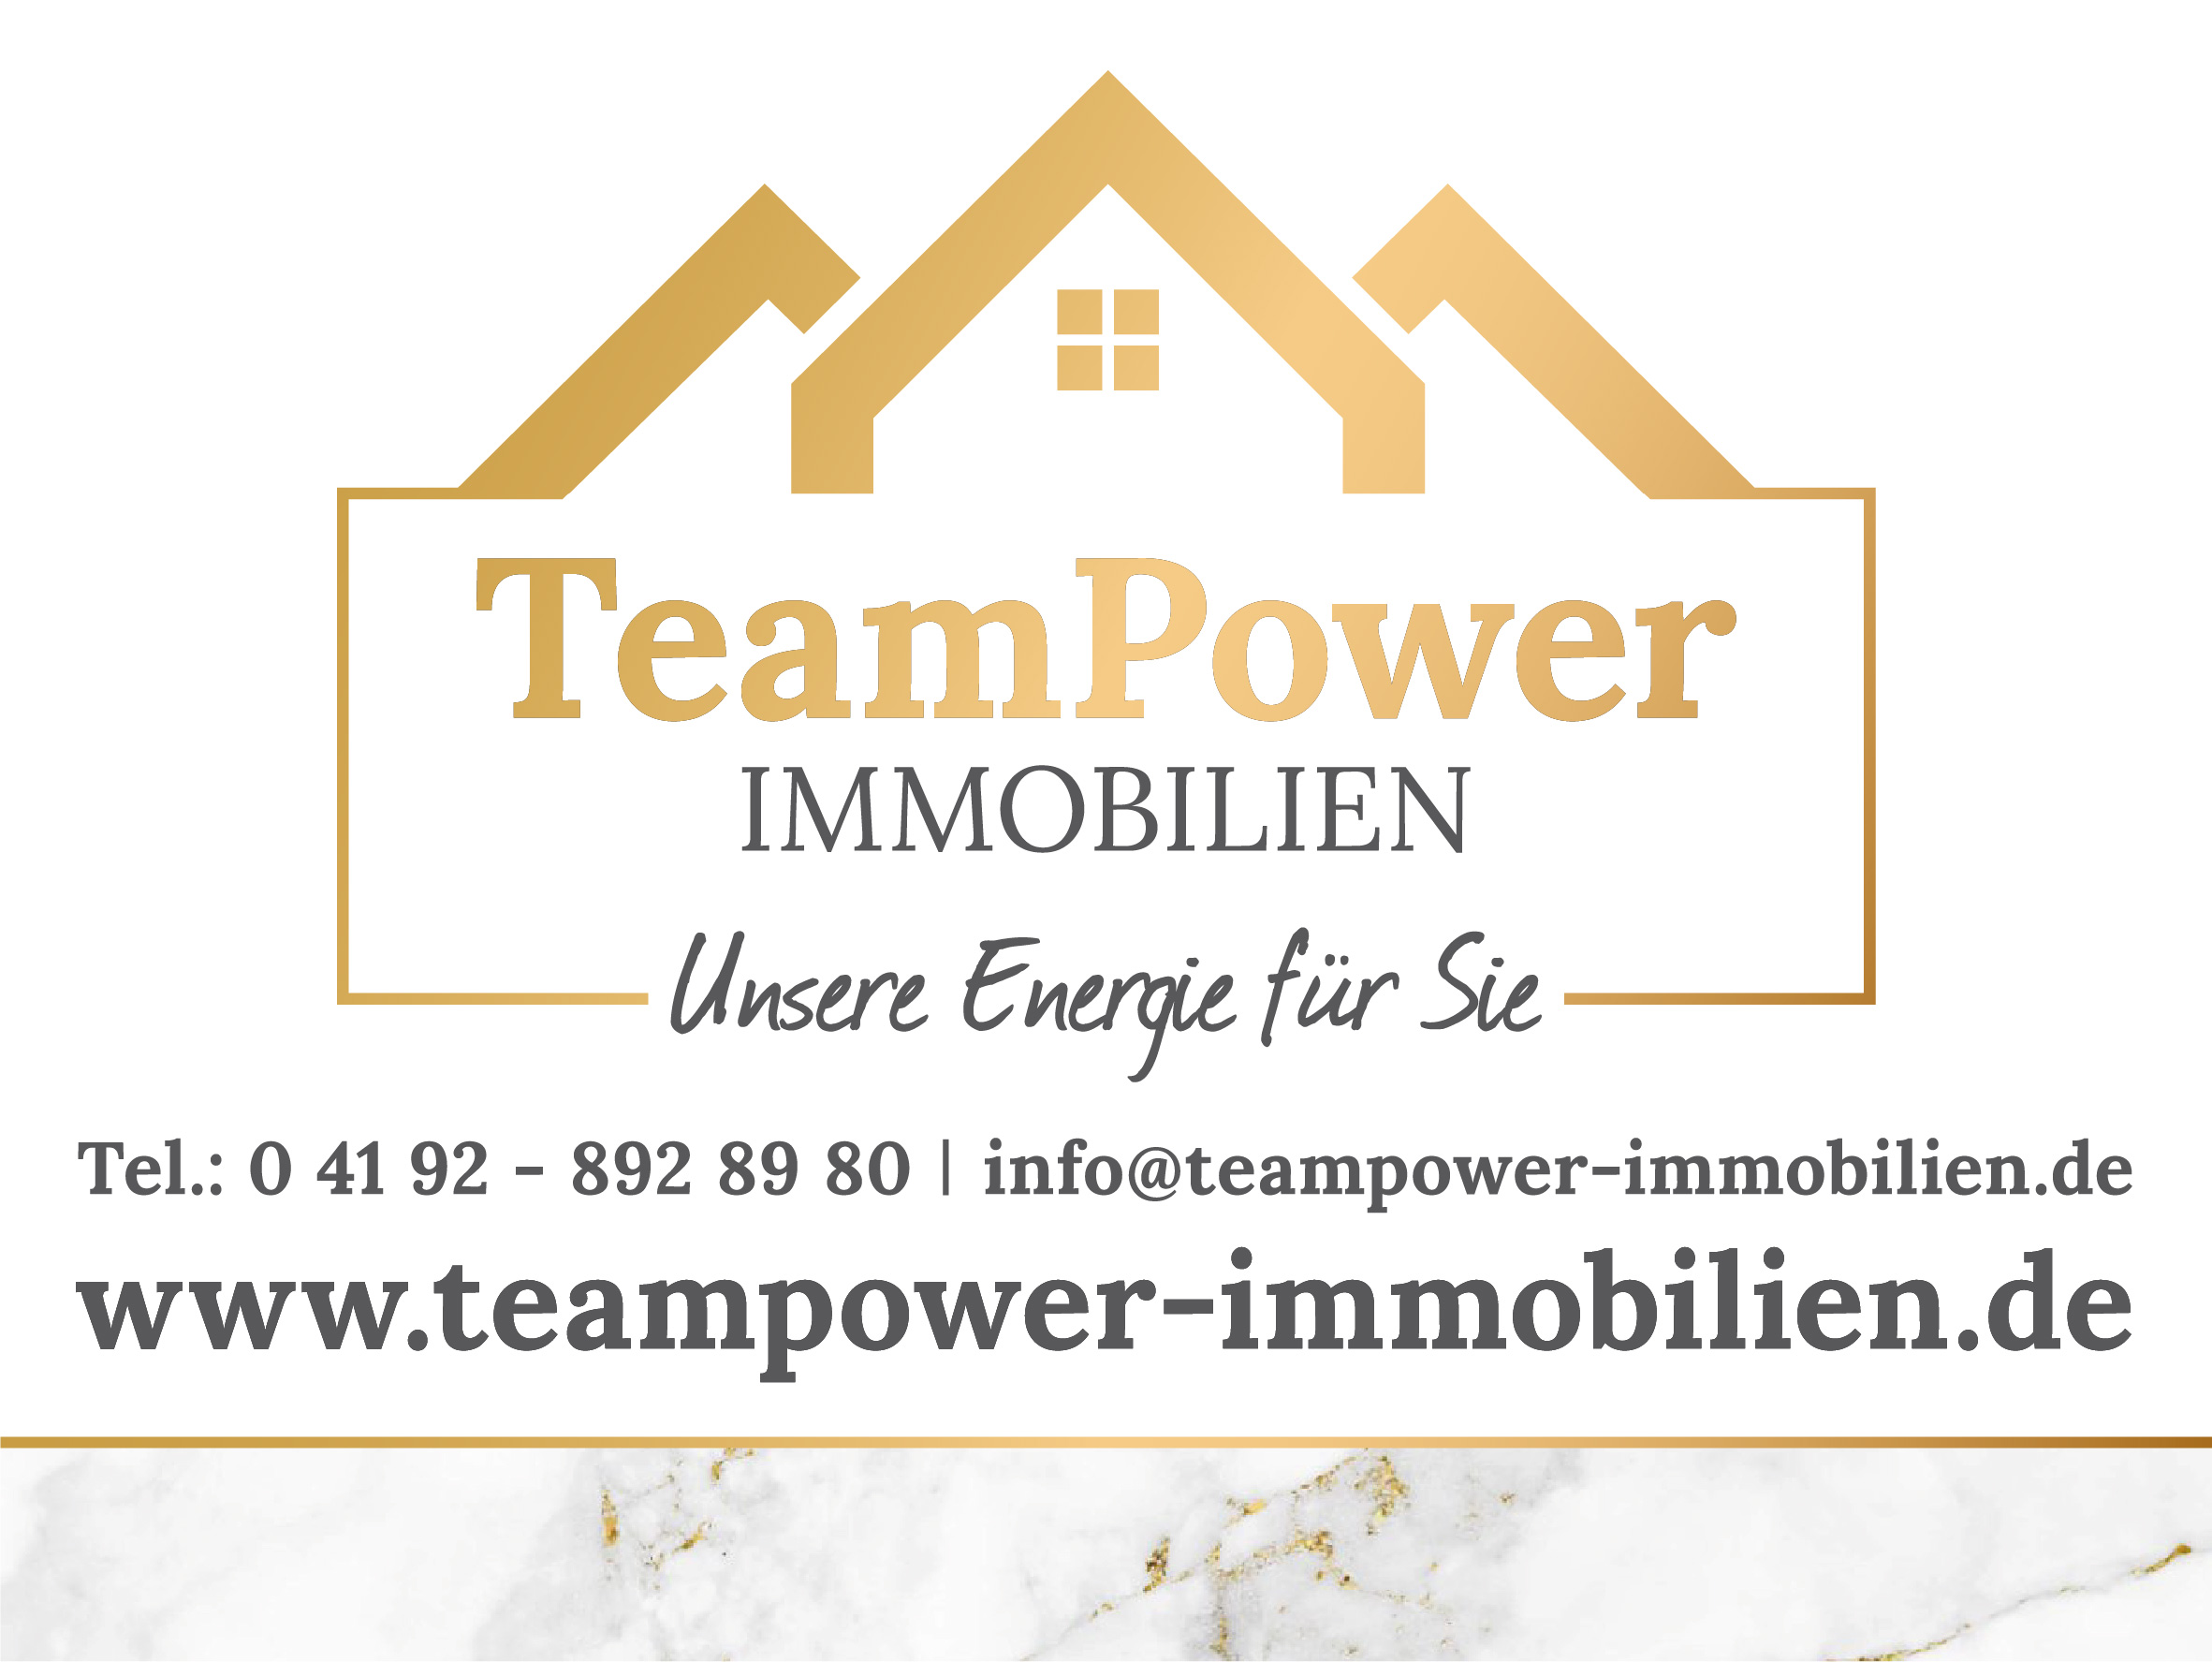 Bild 2 TeamPower Immobilien GmbH in Bad Bramstedt